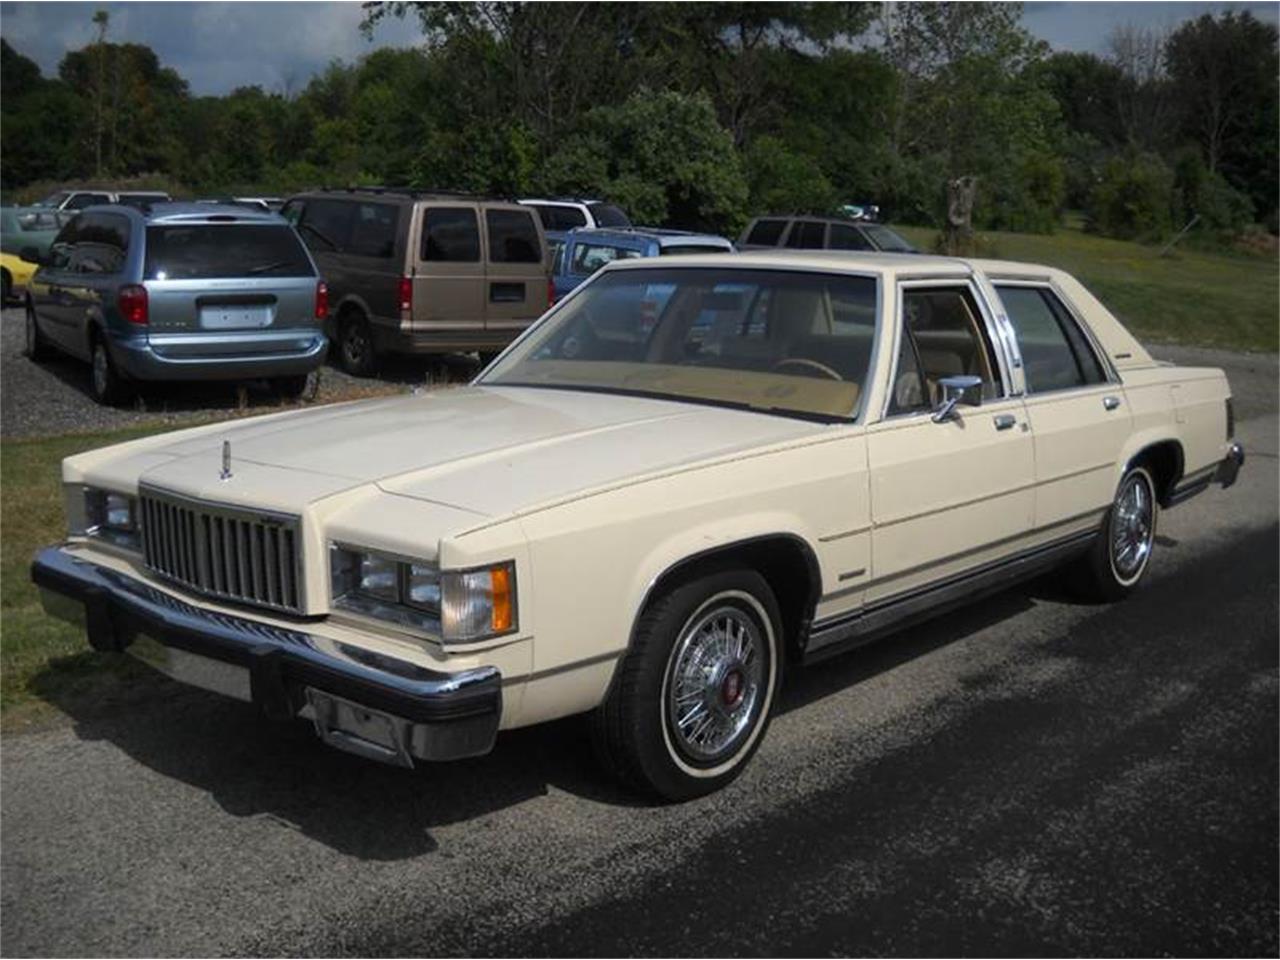 For Sale: 1984 Mercury Grand Marquis in Ashland, Ohio.